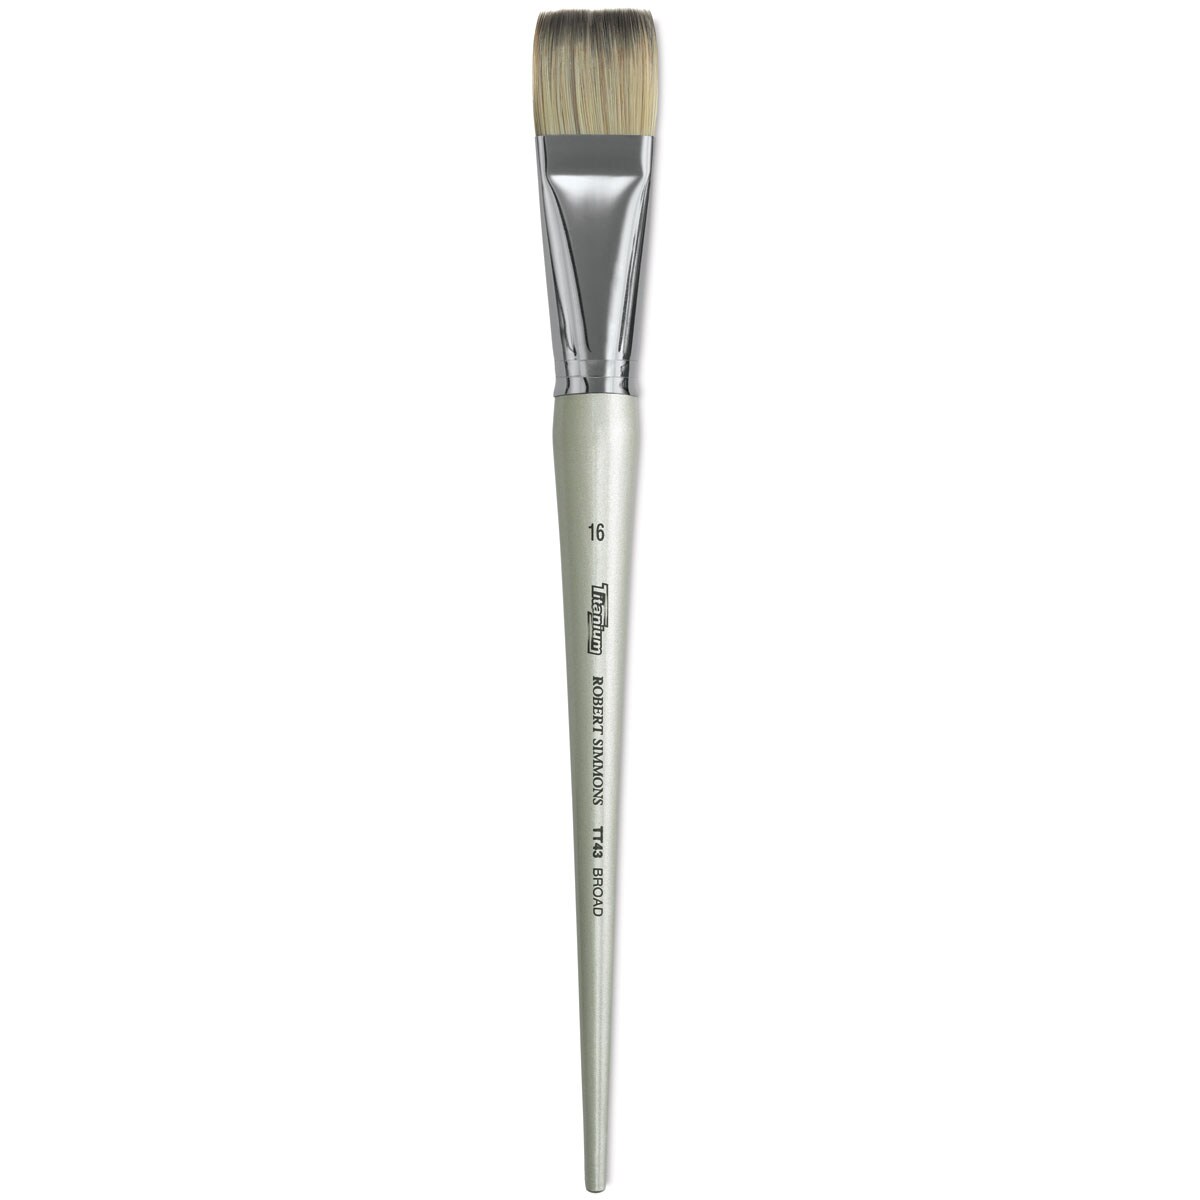 Robert Simmons Titanium Brush - Broad, Long Handle, Size 16 | Michaels